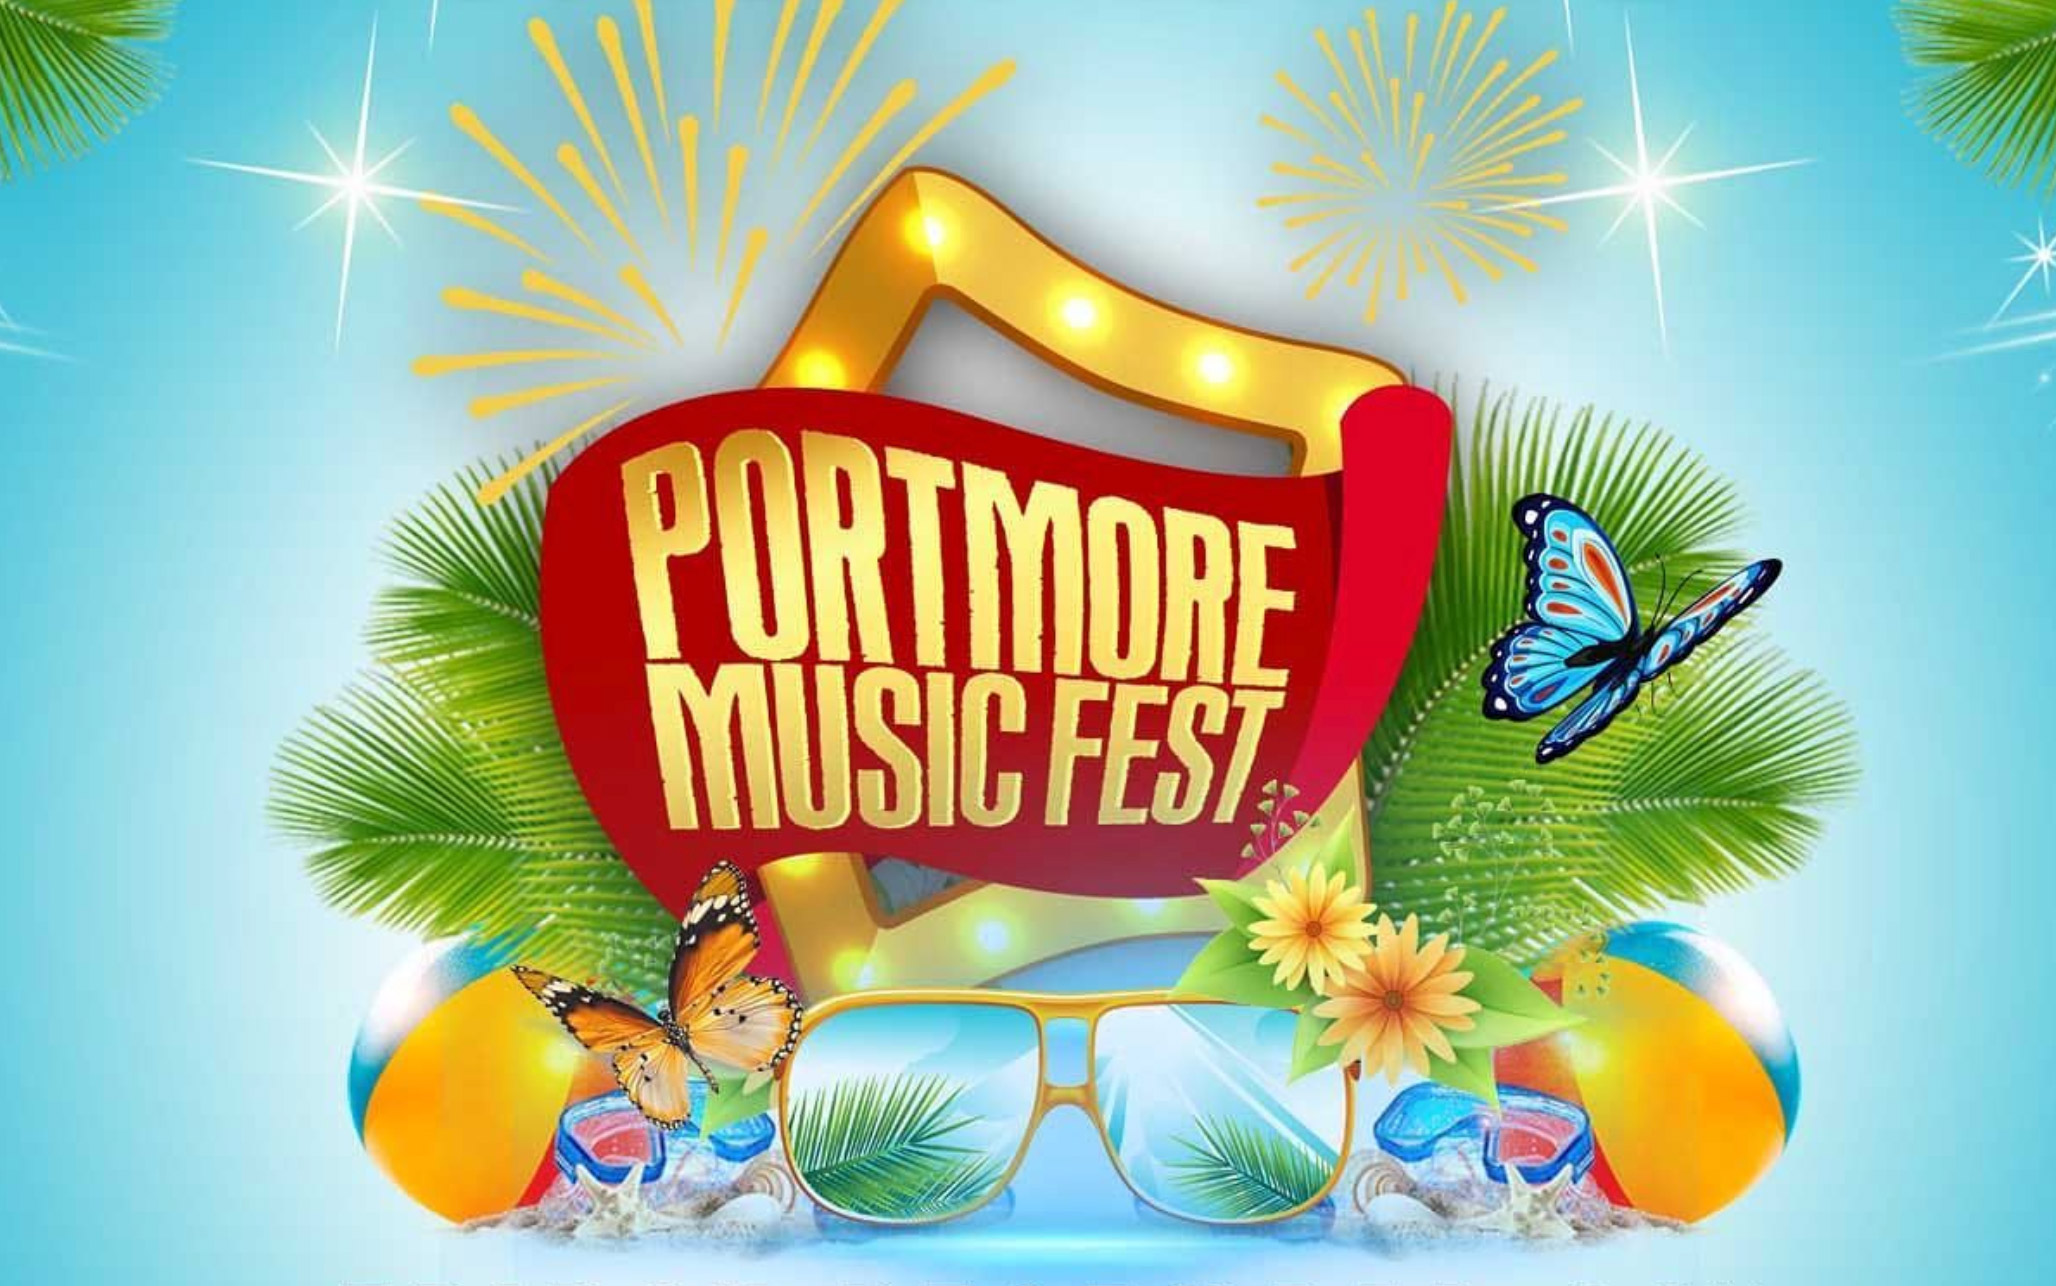 Portmore Music Fest